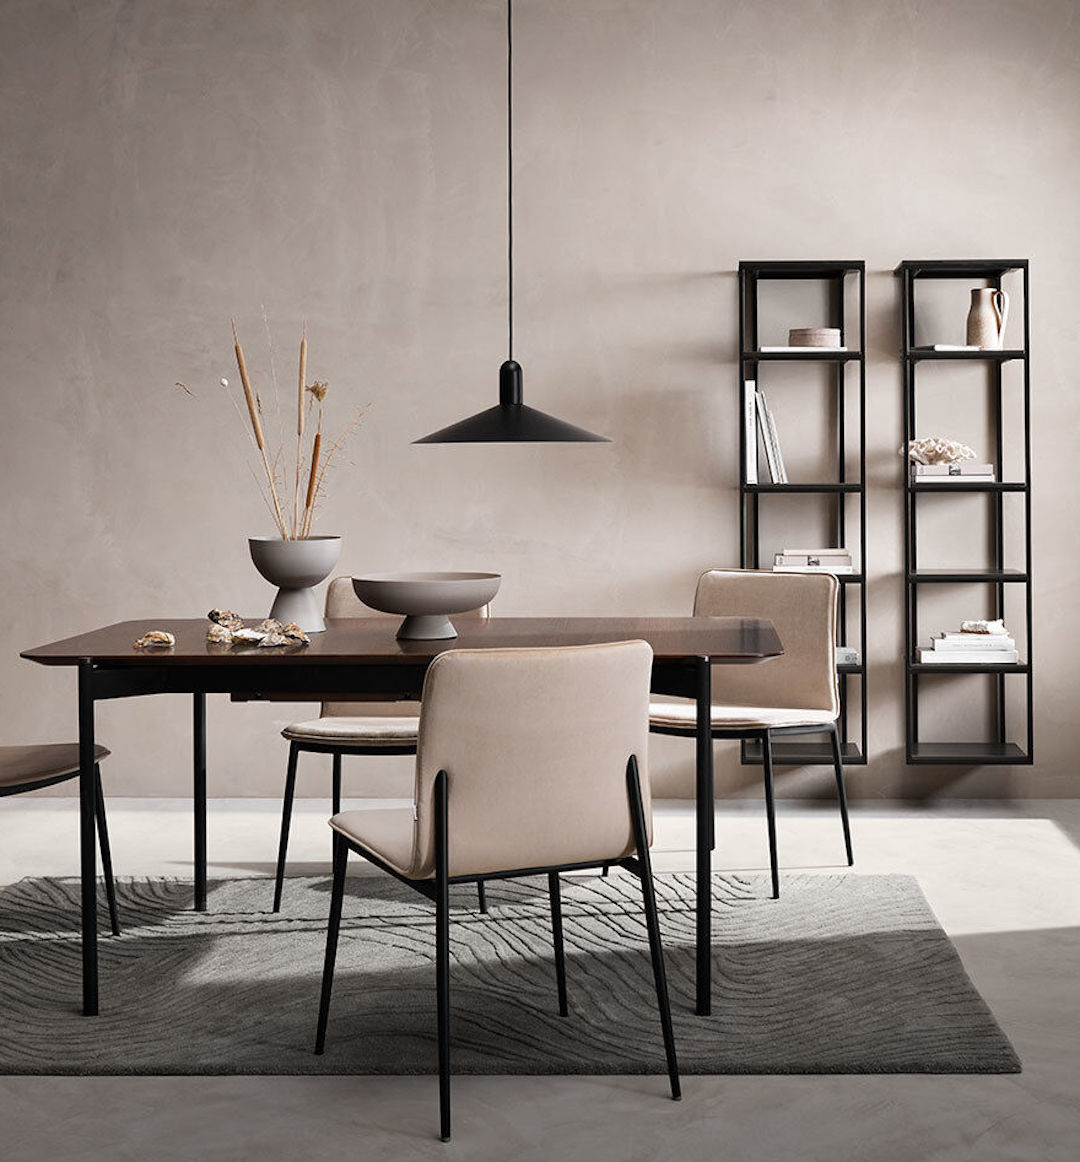 table rectangulaire laqué chaise beige tapis gris rayures étagère métal noire